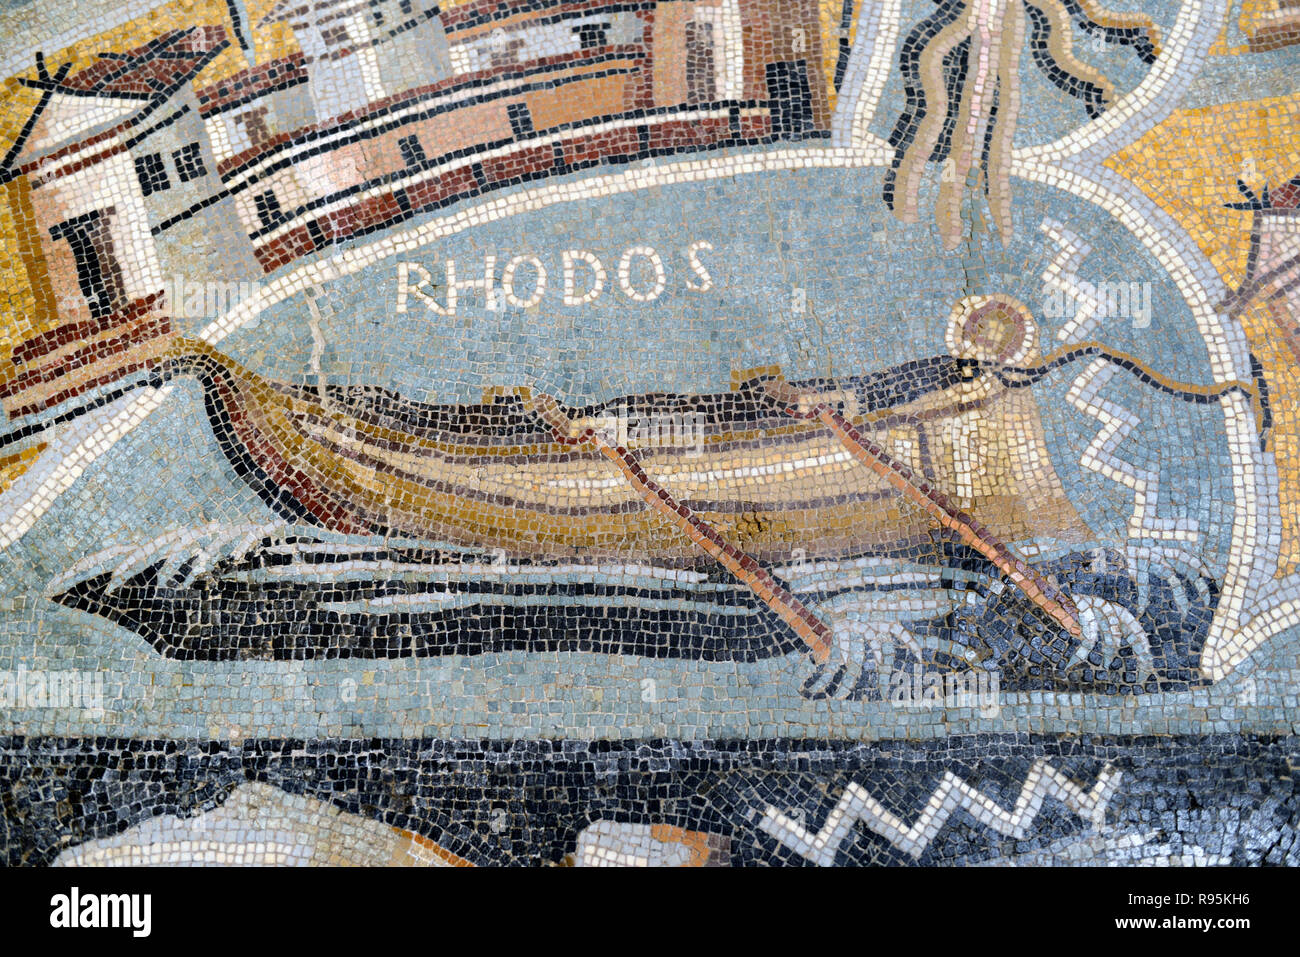 Mosaïque romaine (c3rd-c4e) de l'Office romain, bateau à rames ou en bois Bateau de Rhodes, en Grèce, à partir de la ville romaine antique de Ammaedara Tunisie Haidra Banque D'Images